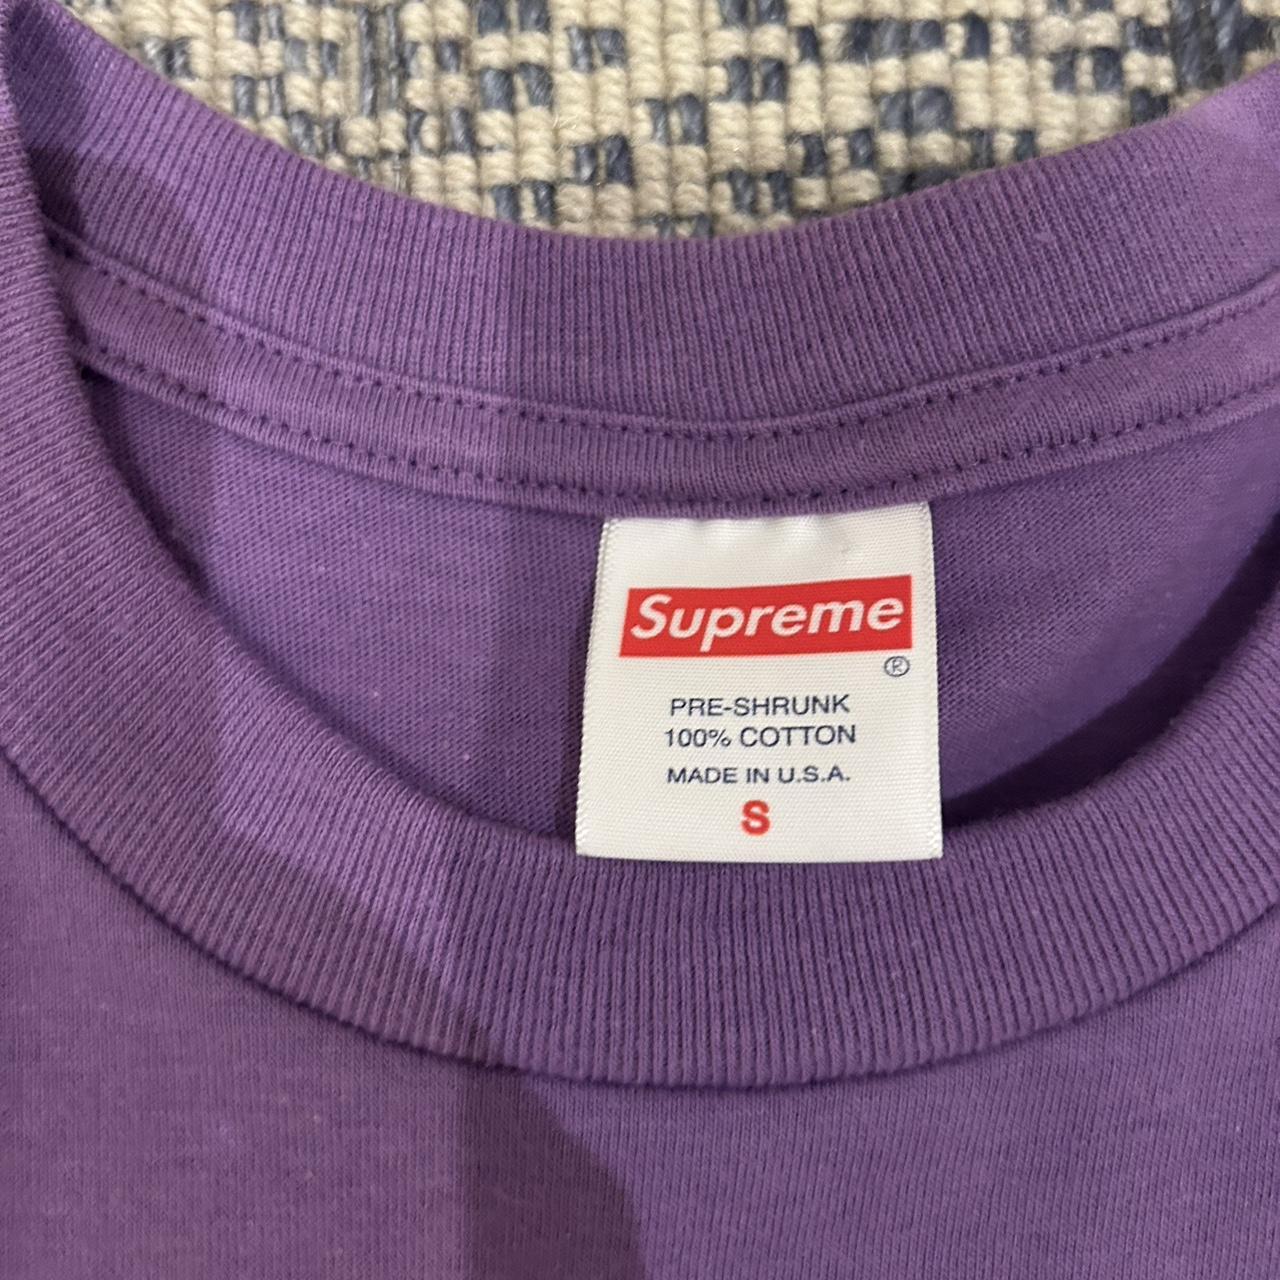 supreme purple spaghetti shirt size small perfect... - Depop